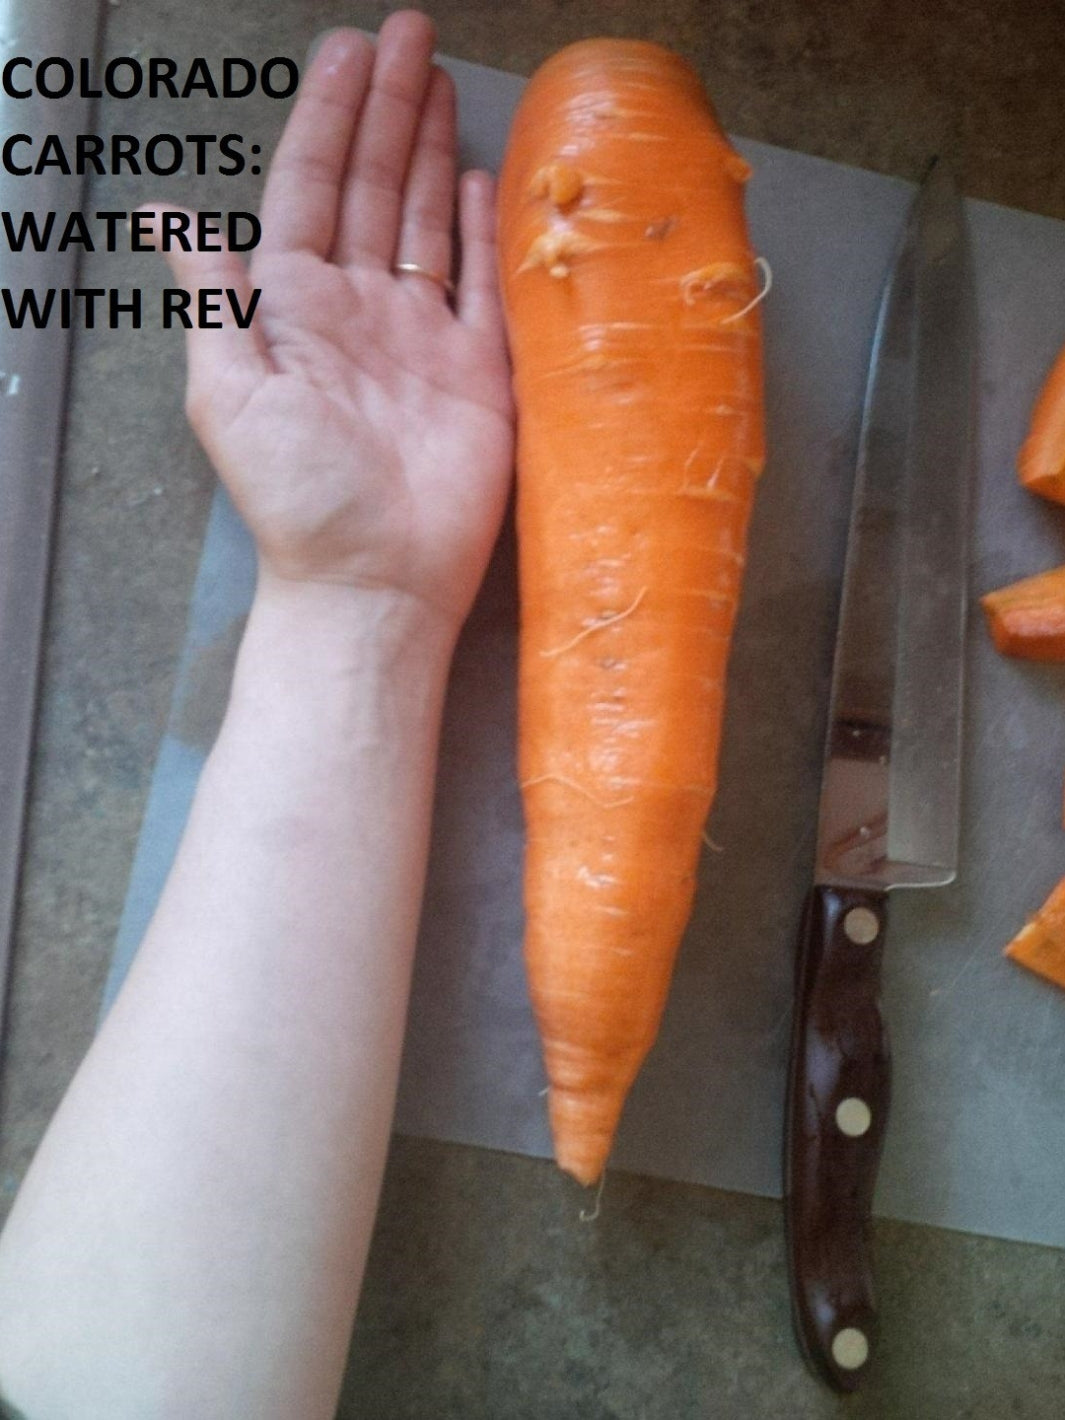 REV Crop Pro Colorado Carrot